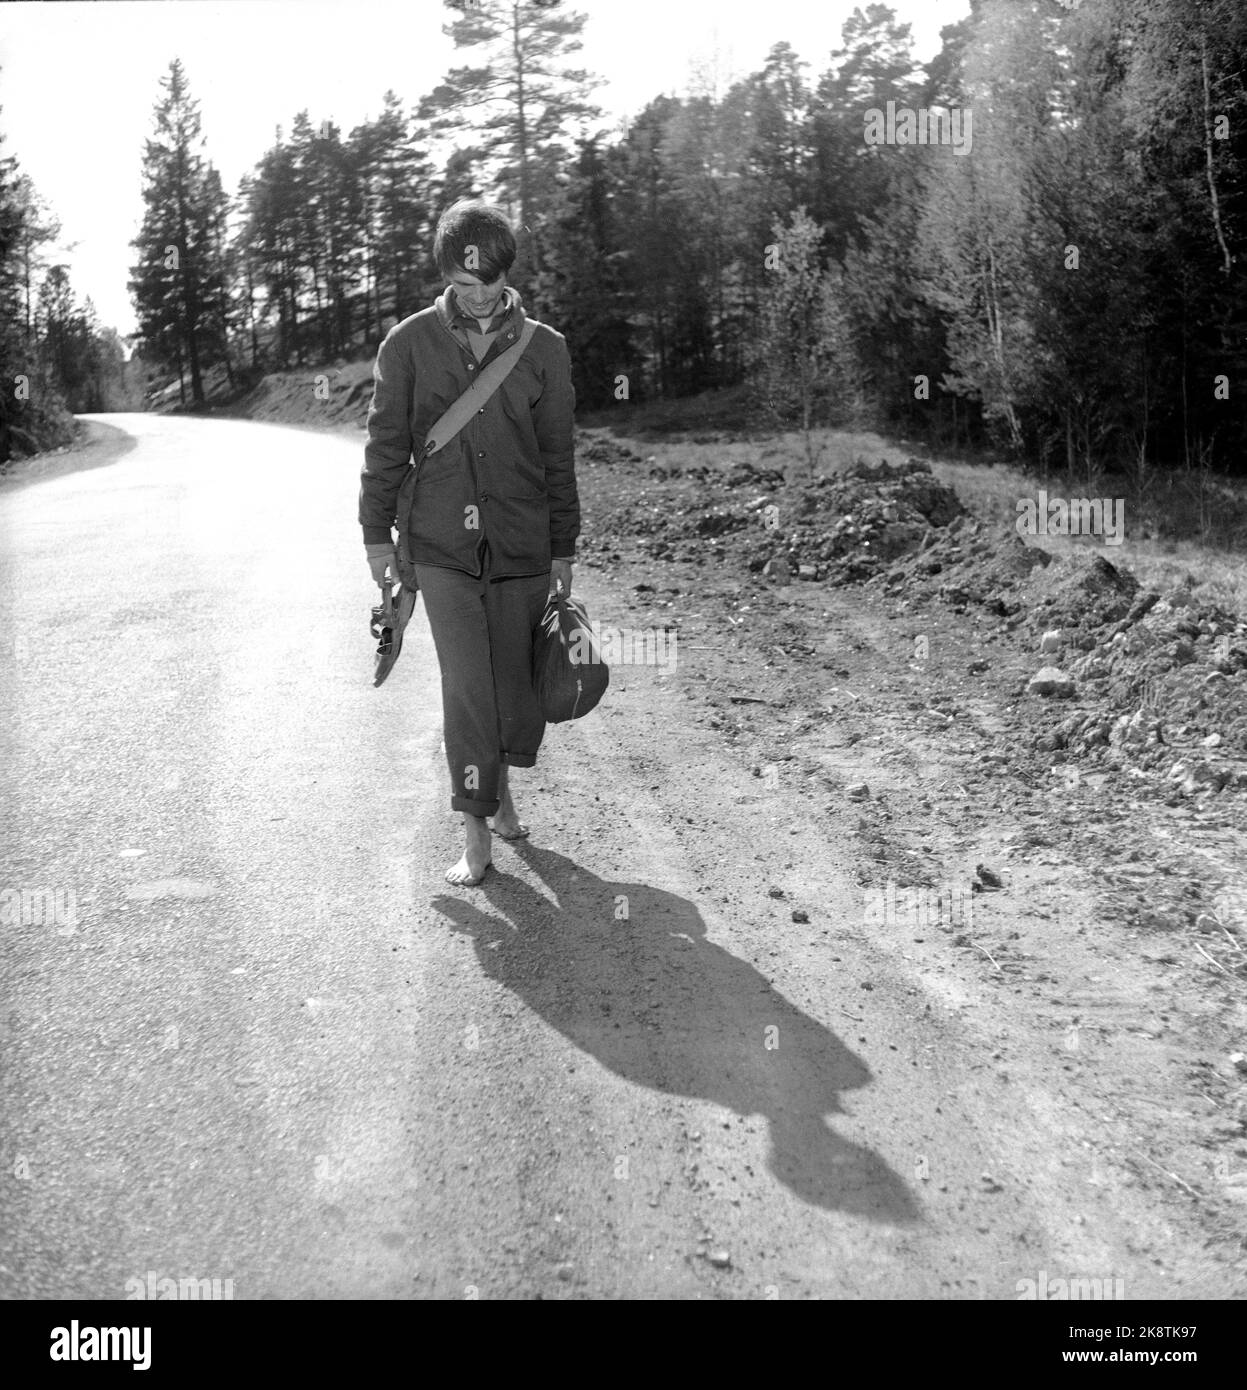 L'art de la marche, en 1956. Norvège, le printemps 1956. Le célèbre acteur suédois Per Oscarsson a décidé de marcher de Göteborg à Oslo et de nourrir ce que la nature avait à offrir. Ce n'était pas un retard de P.R. l'acteur a juste pensé que la vie était devenue malsaine et a voulu revenir à la nature. "Je suis juste un être humain qui va découvrir des secrets de la nature qui devraient être clairs pour nous .." Photo: Aage Storløkken / actuel / NTB Banque D'Images